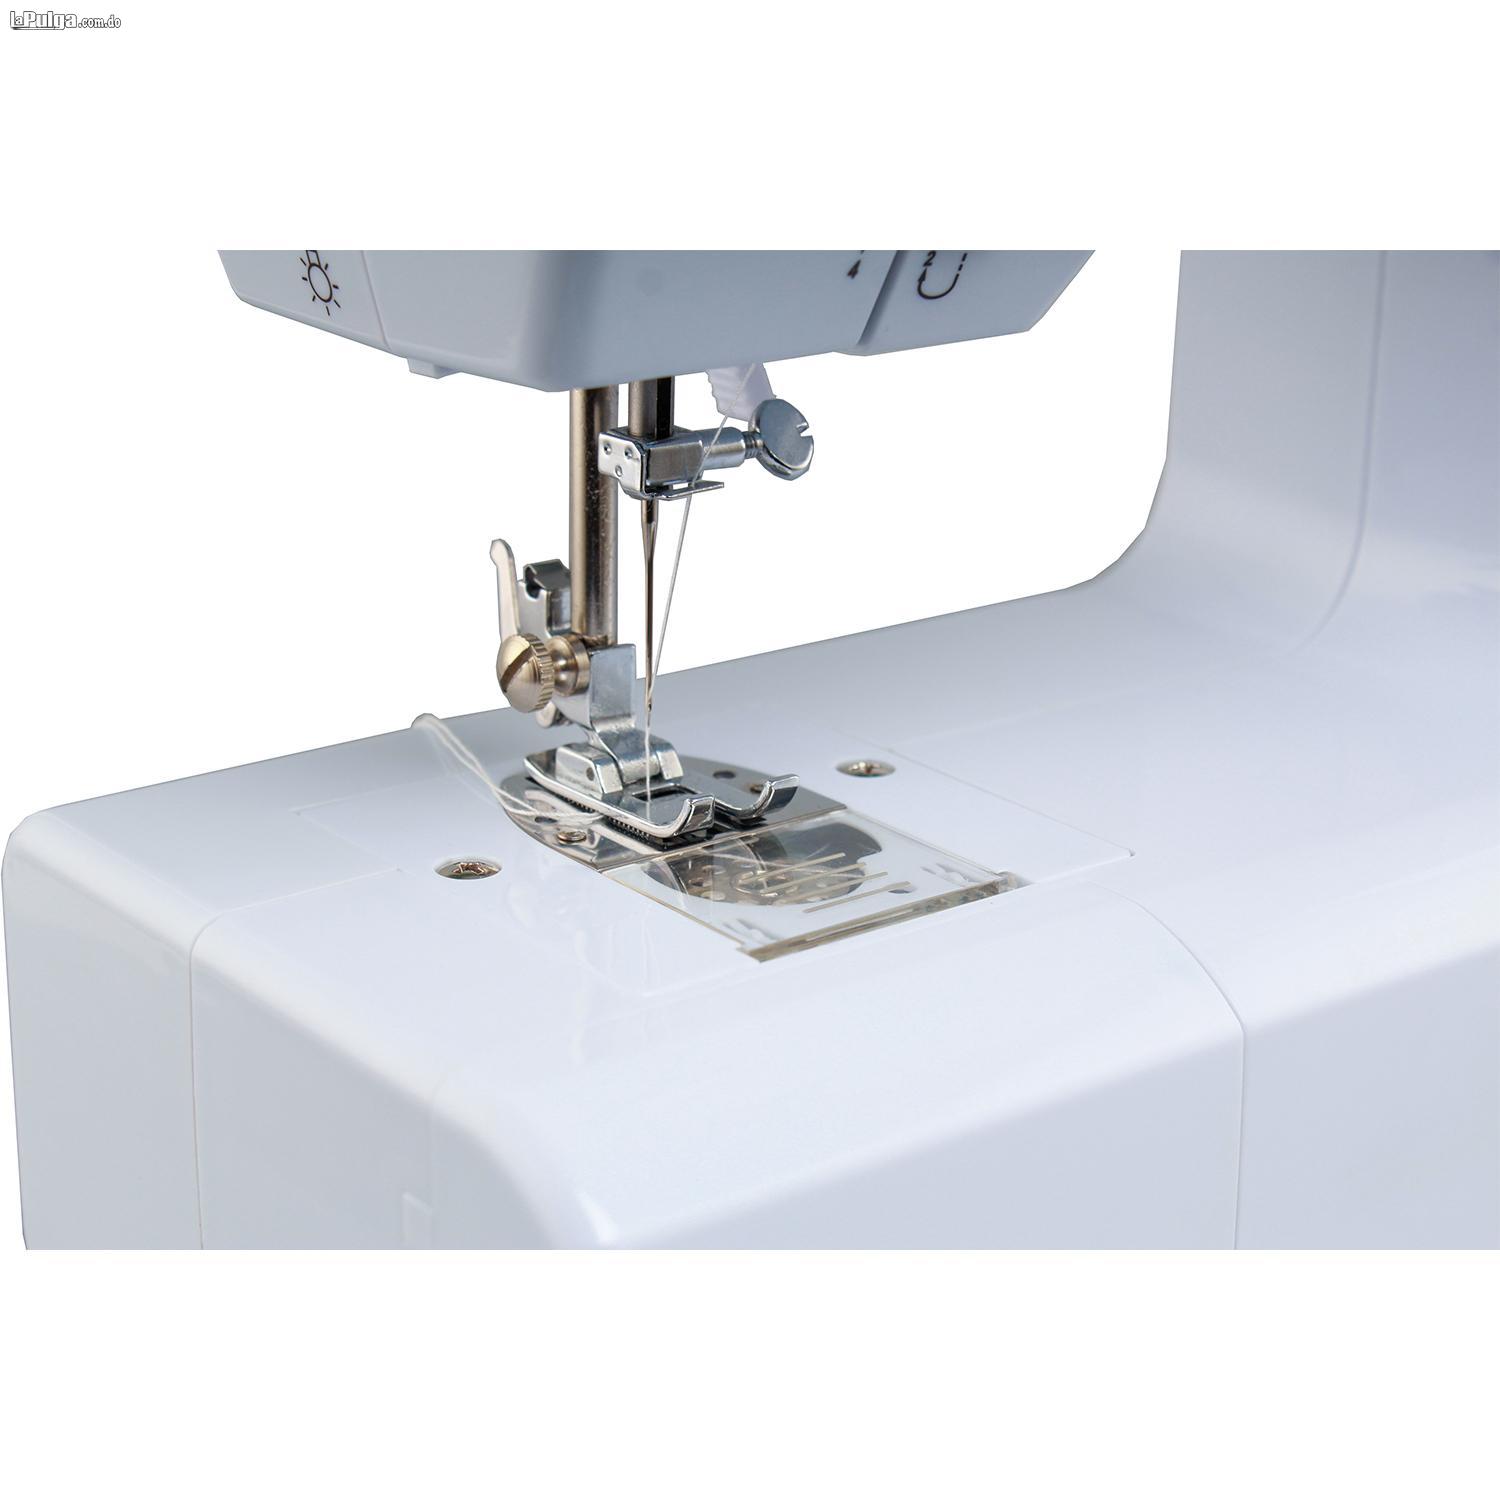 Mini Máquinas de coser multifuncionales Mini Maquina de Coser Foto 7082024-1.jpg